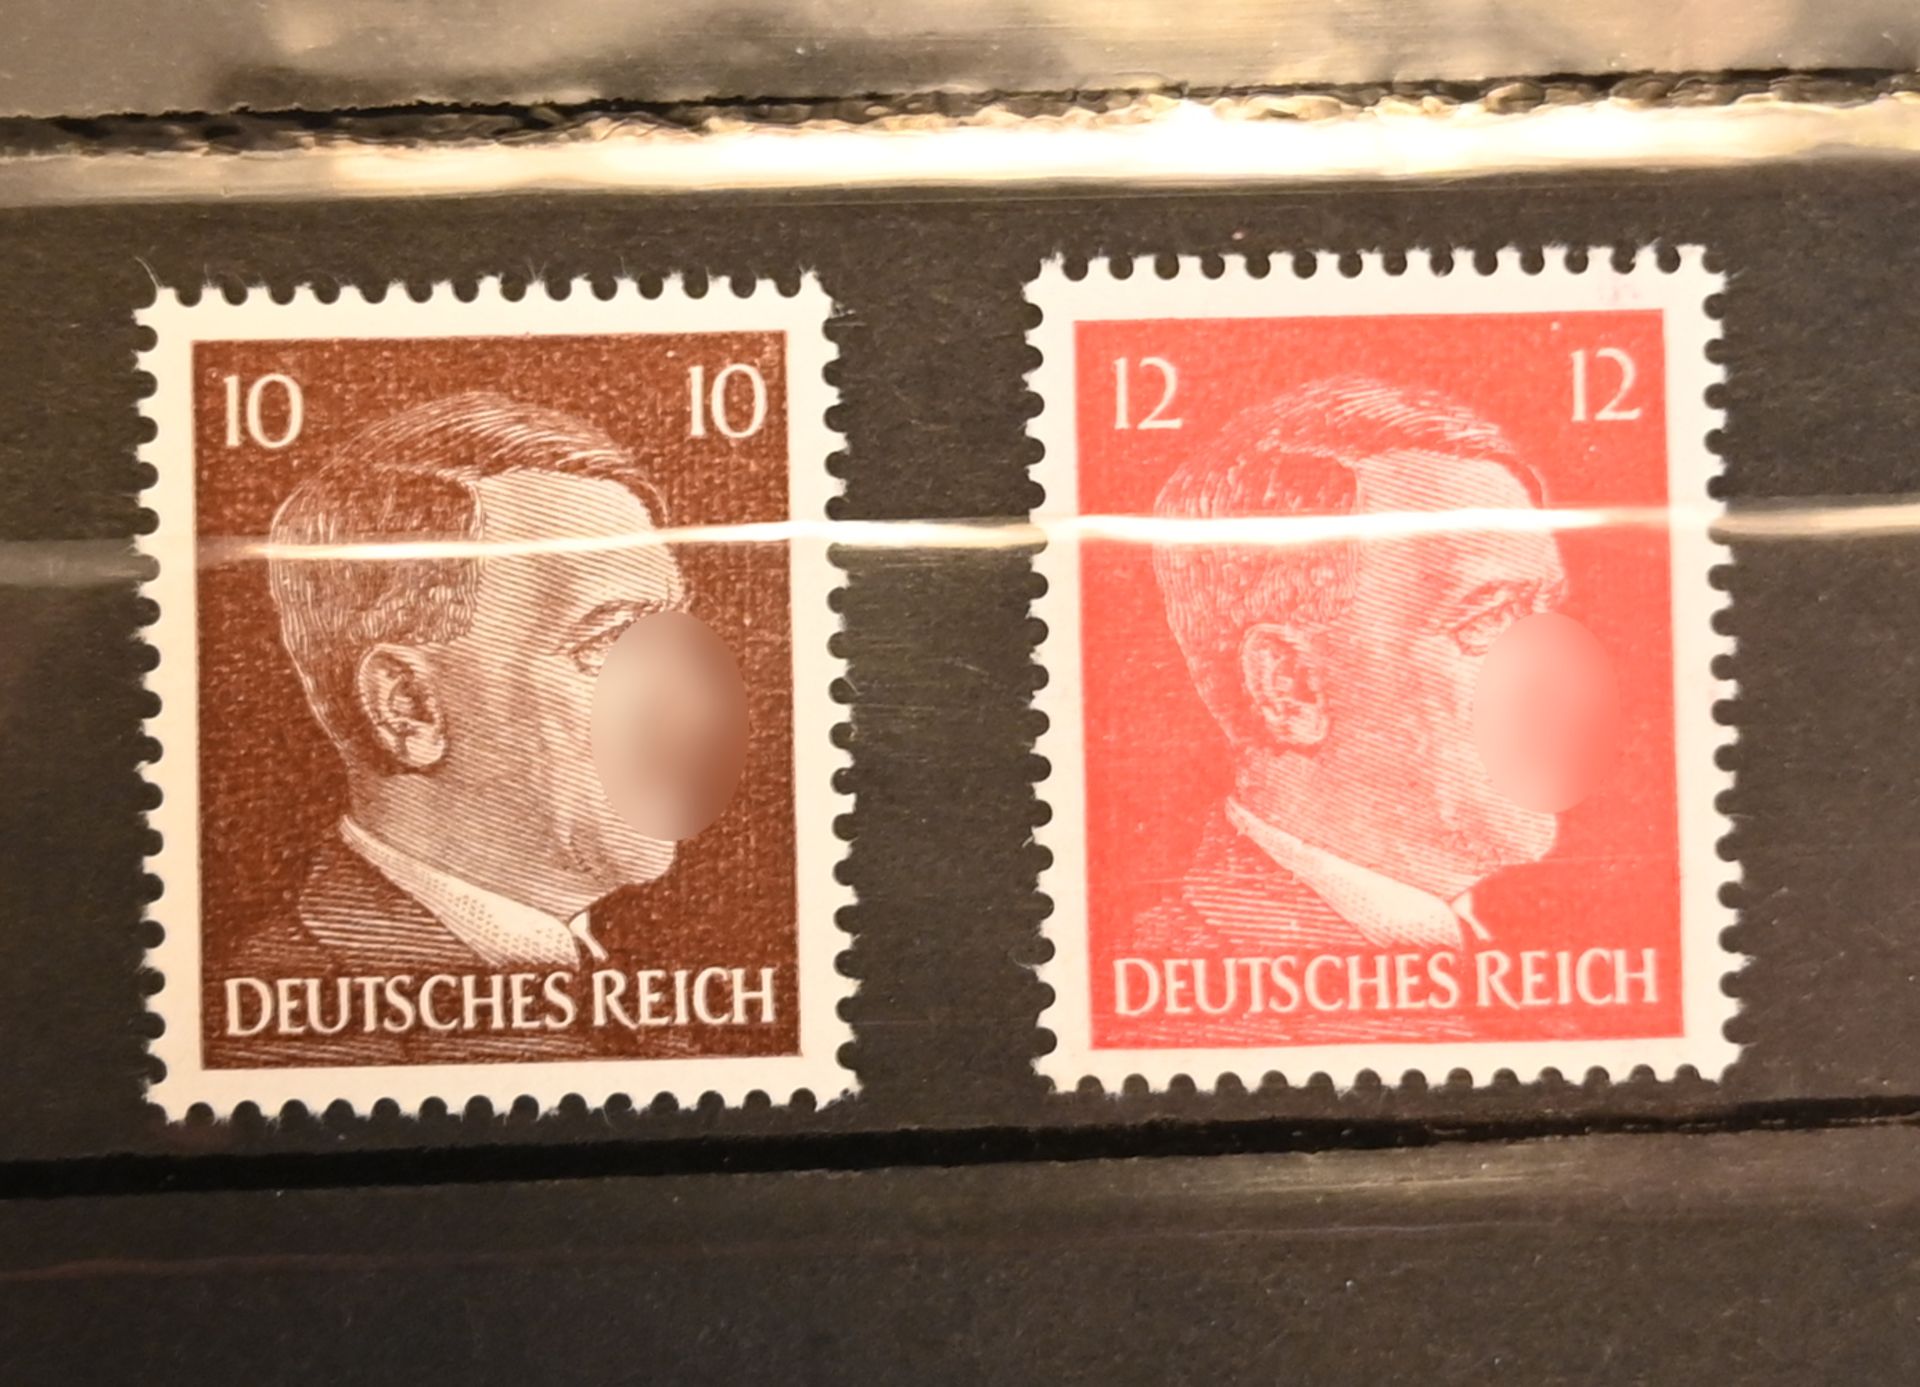 33 Ordner mit ETBs von 1984-2020 sowie 1 Briefmarkenalbum Deutsches Reich, 1 Album BRD, DDR, Alle We - Bild 16 aus 27